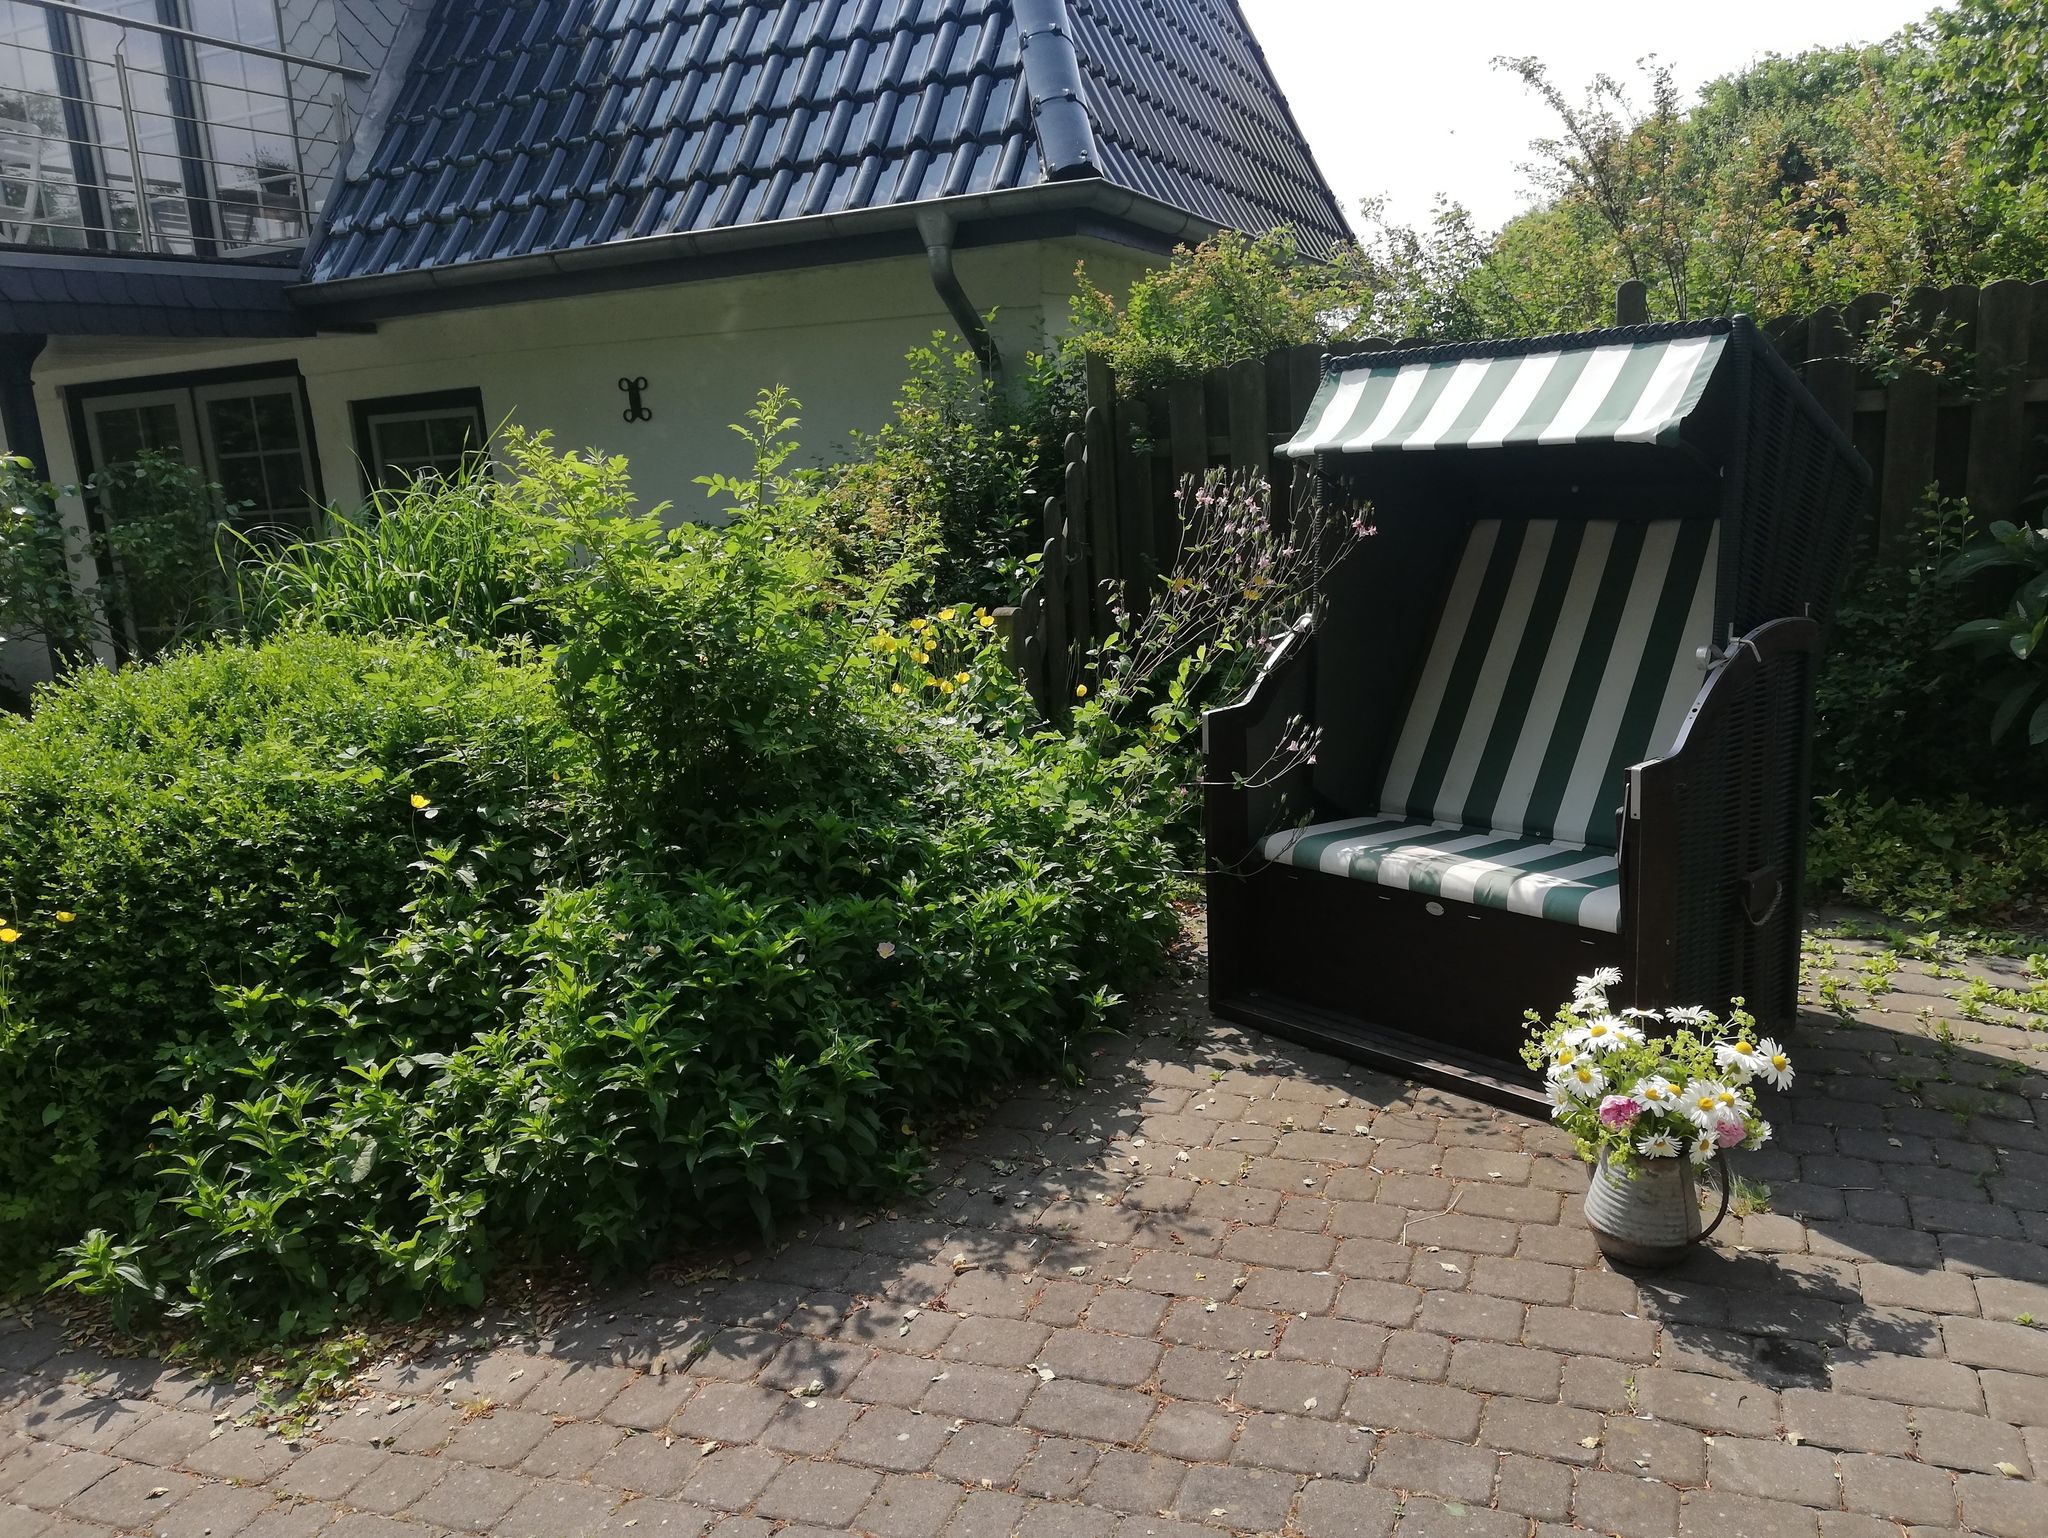 Ferienwohnung Manu  3Ps  1 Hund Strandnah Ueckermünde mit Terrasse, Garten und Grill